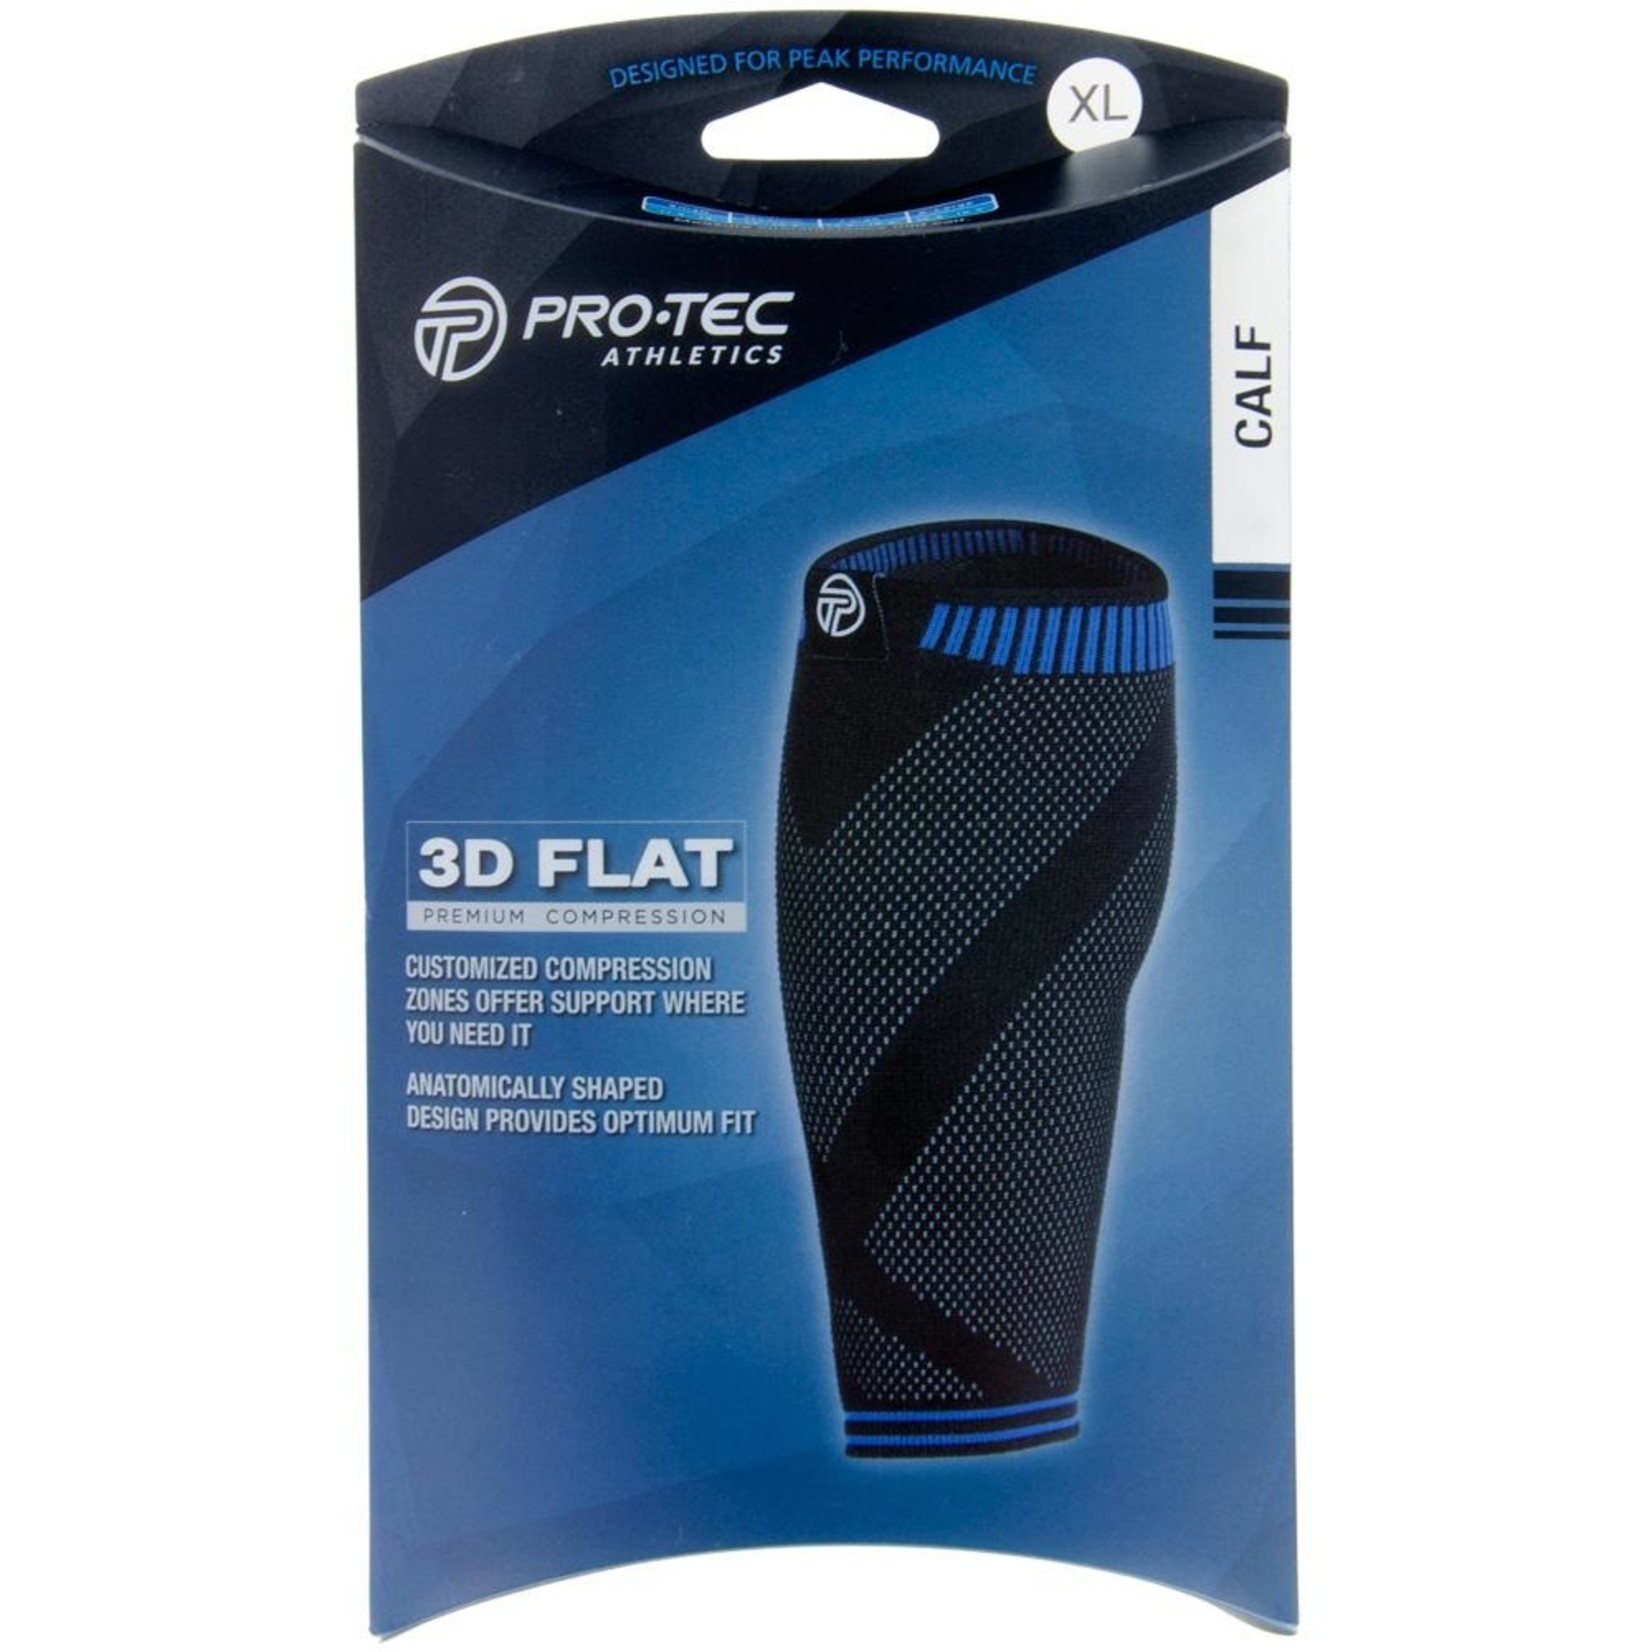 Pro-Tec 3D Flat Calf Support